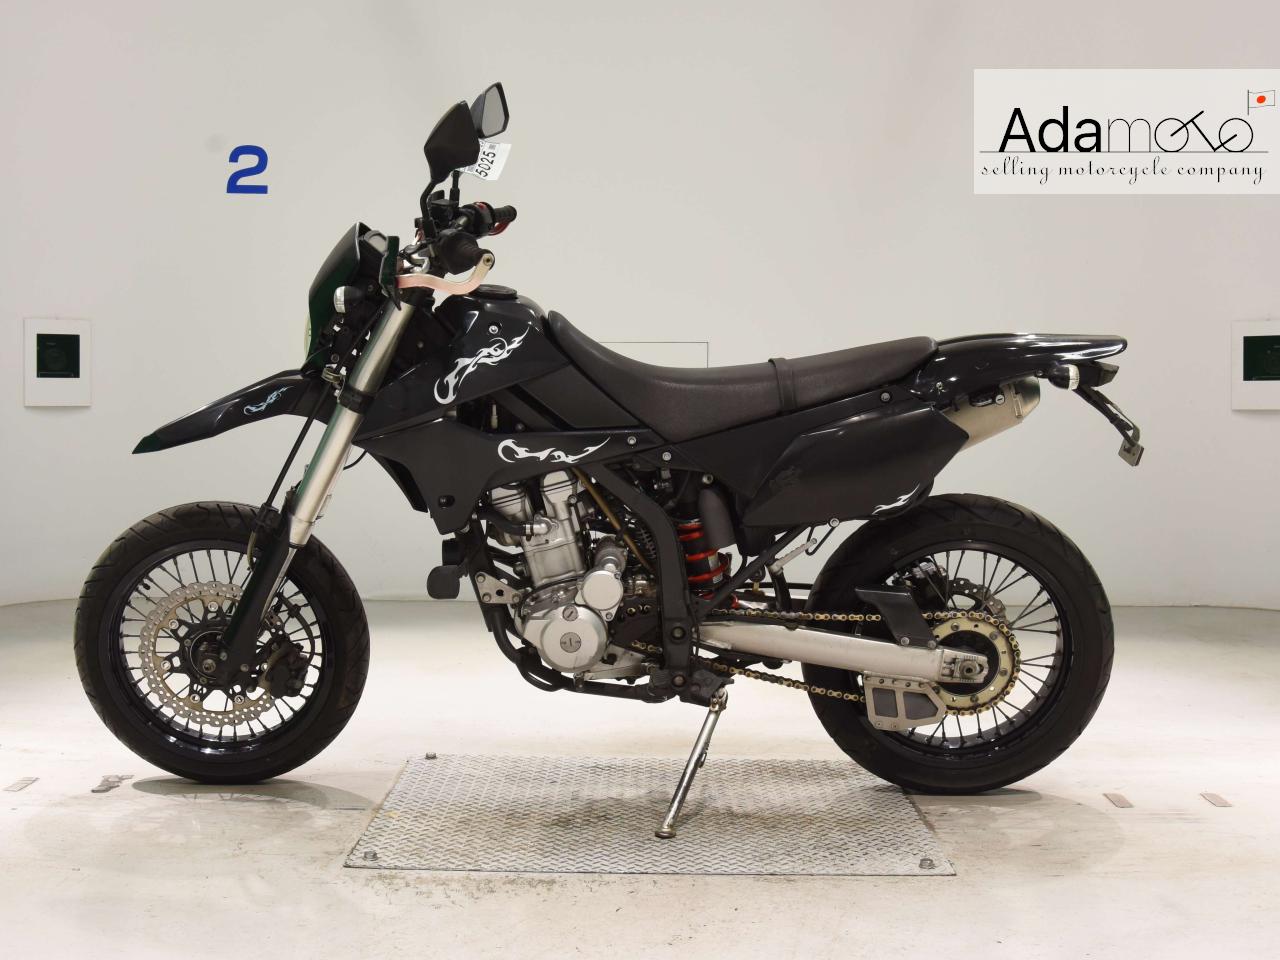 Kawasaki D TRACKERX - Adamoto - Motorcycles from Japan